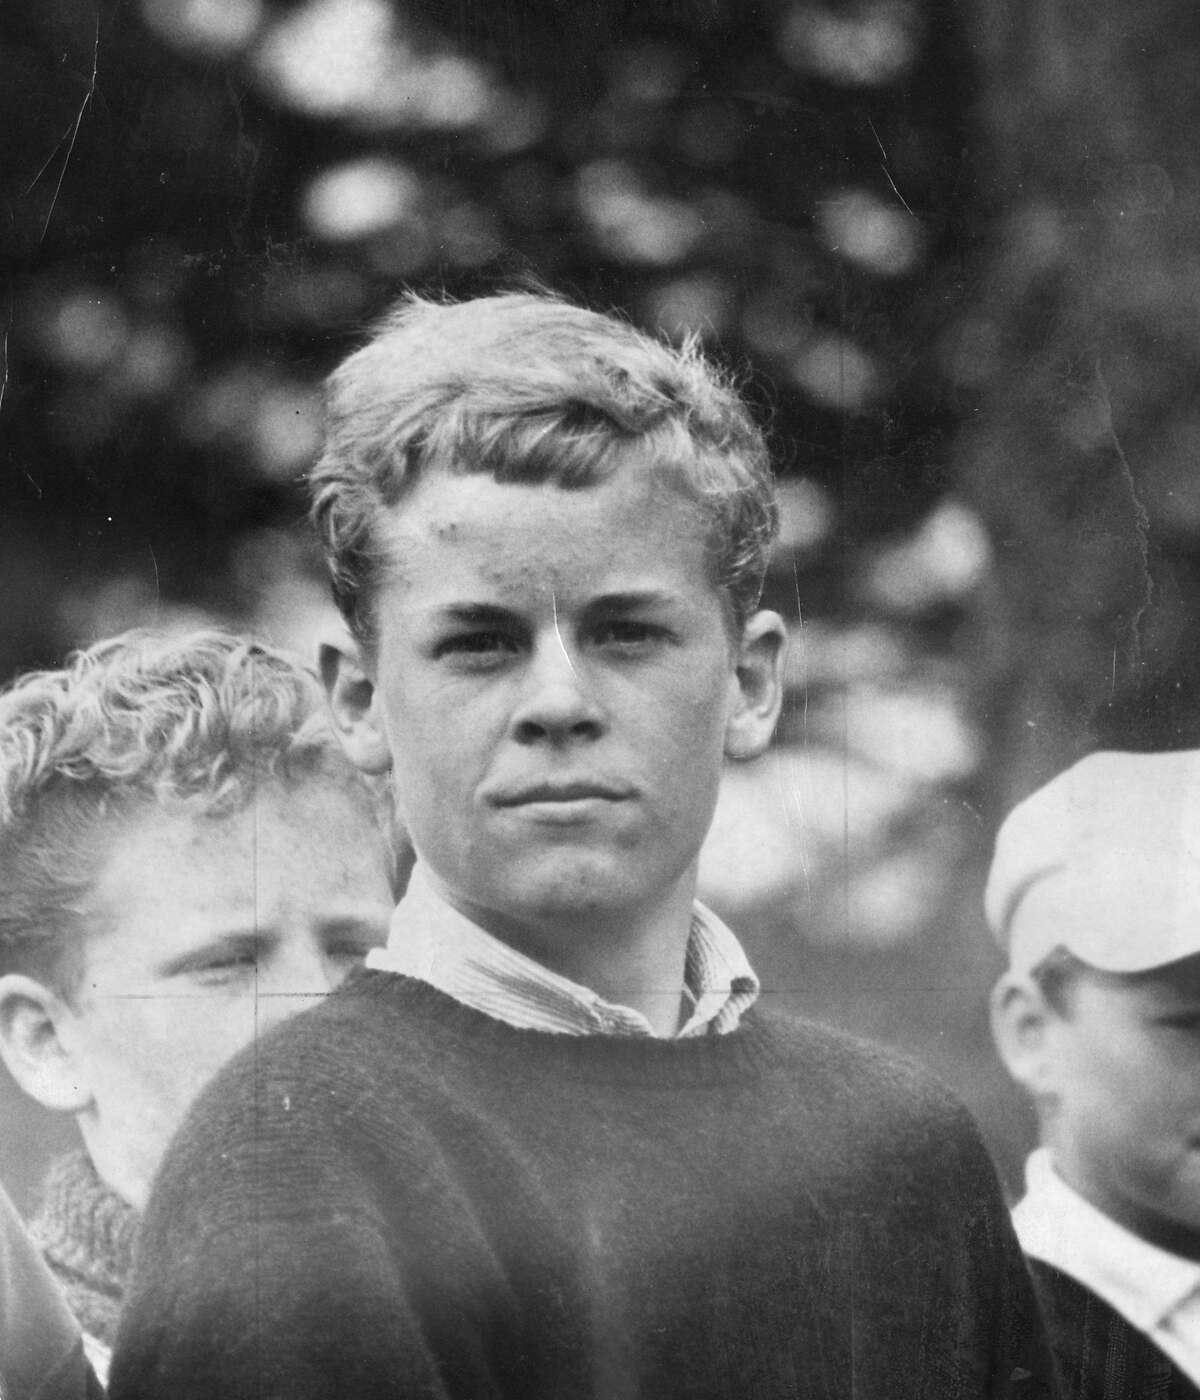 Golfer Johnny Miller, July 25, 1963